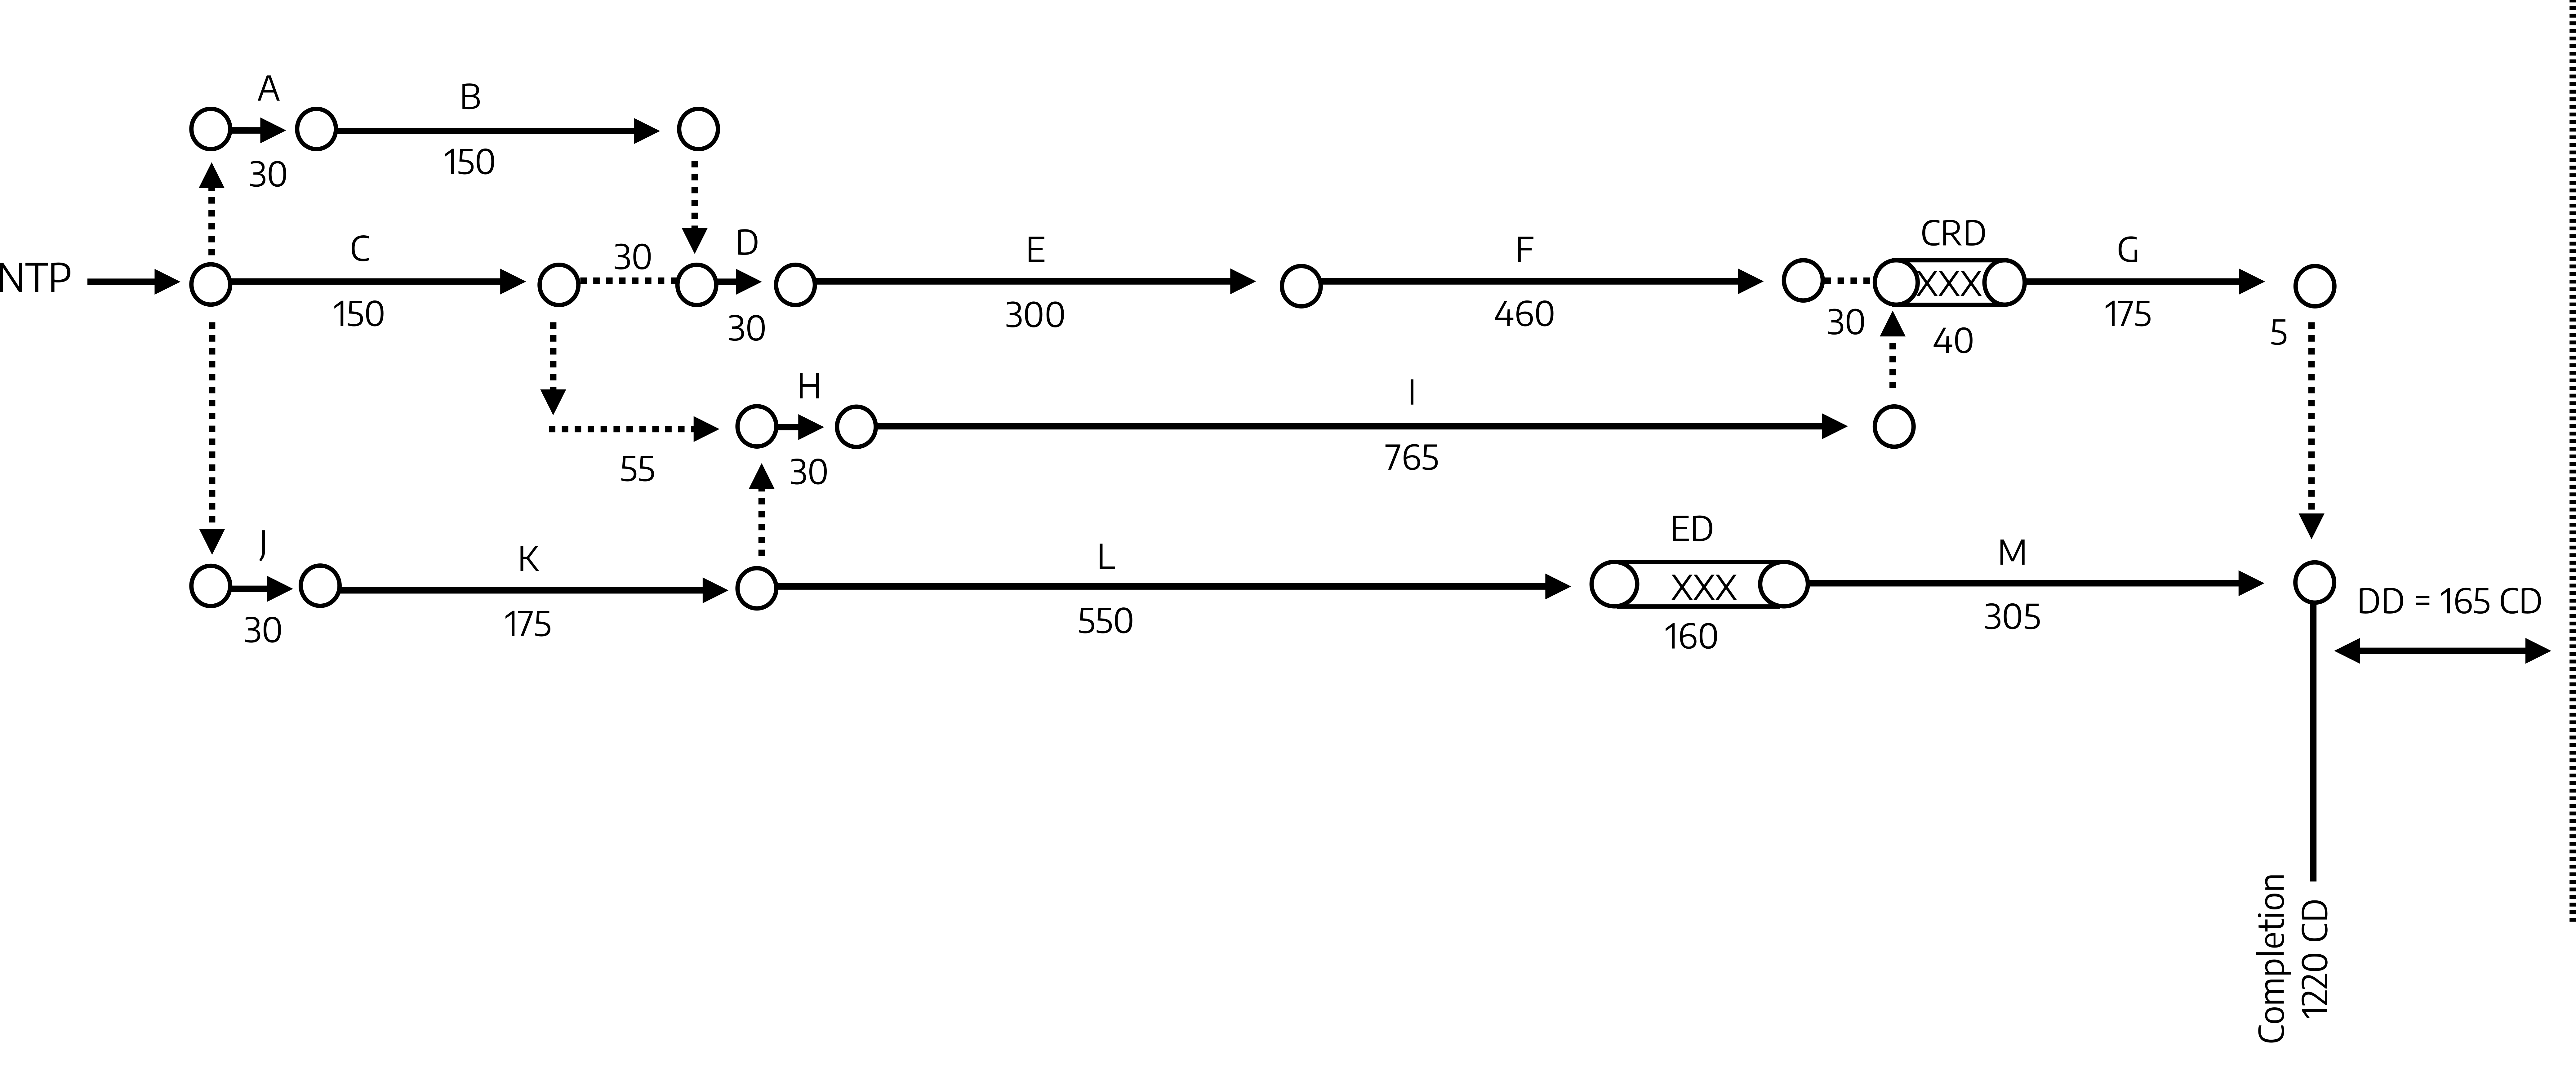 Linear timeline. Main line: NTP arrow C (150) arrow 30 arrow D (30) arrow E (300) arrow F (460) arrow 30, CRD (40) arrow G (175) arrow 5 arrow completion (1220 CD) arrow DD = 165 CD. Short line above main line: A (30) arrow B (150) arrow down to D to connect to main line. Short line below main line: arrow down from 30 arrow 55 arrow H (30) arrow I (765) arrow up to CRD to connect to main line. Long line at the very bottom: J (30) arrow K (175) arrow L (550) arrow ED (160) arrow M (305) arrow completion (1220 CD) arrow DD = 165 CD.